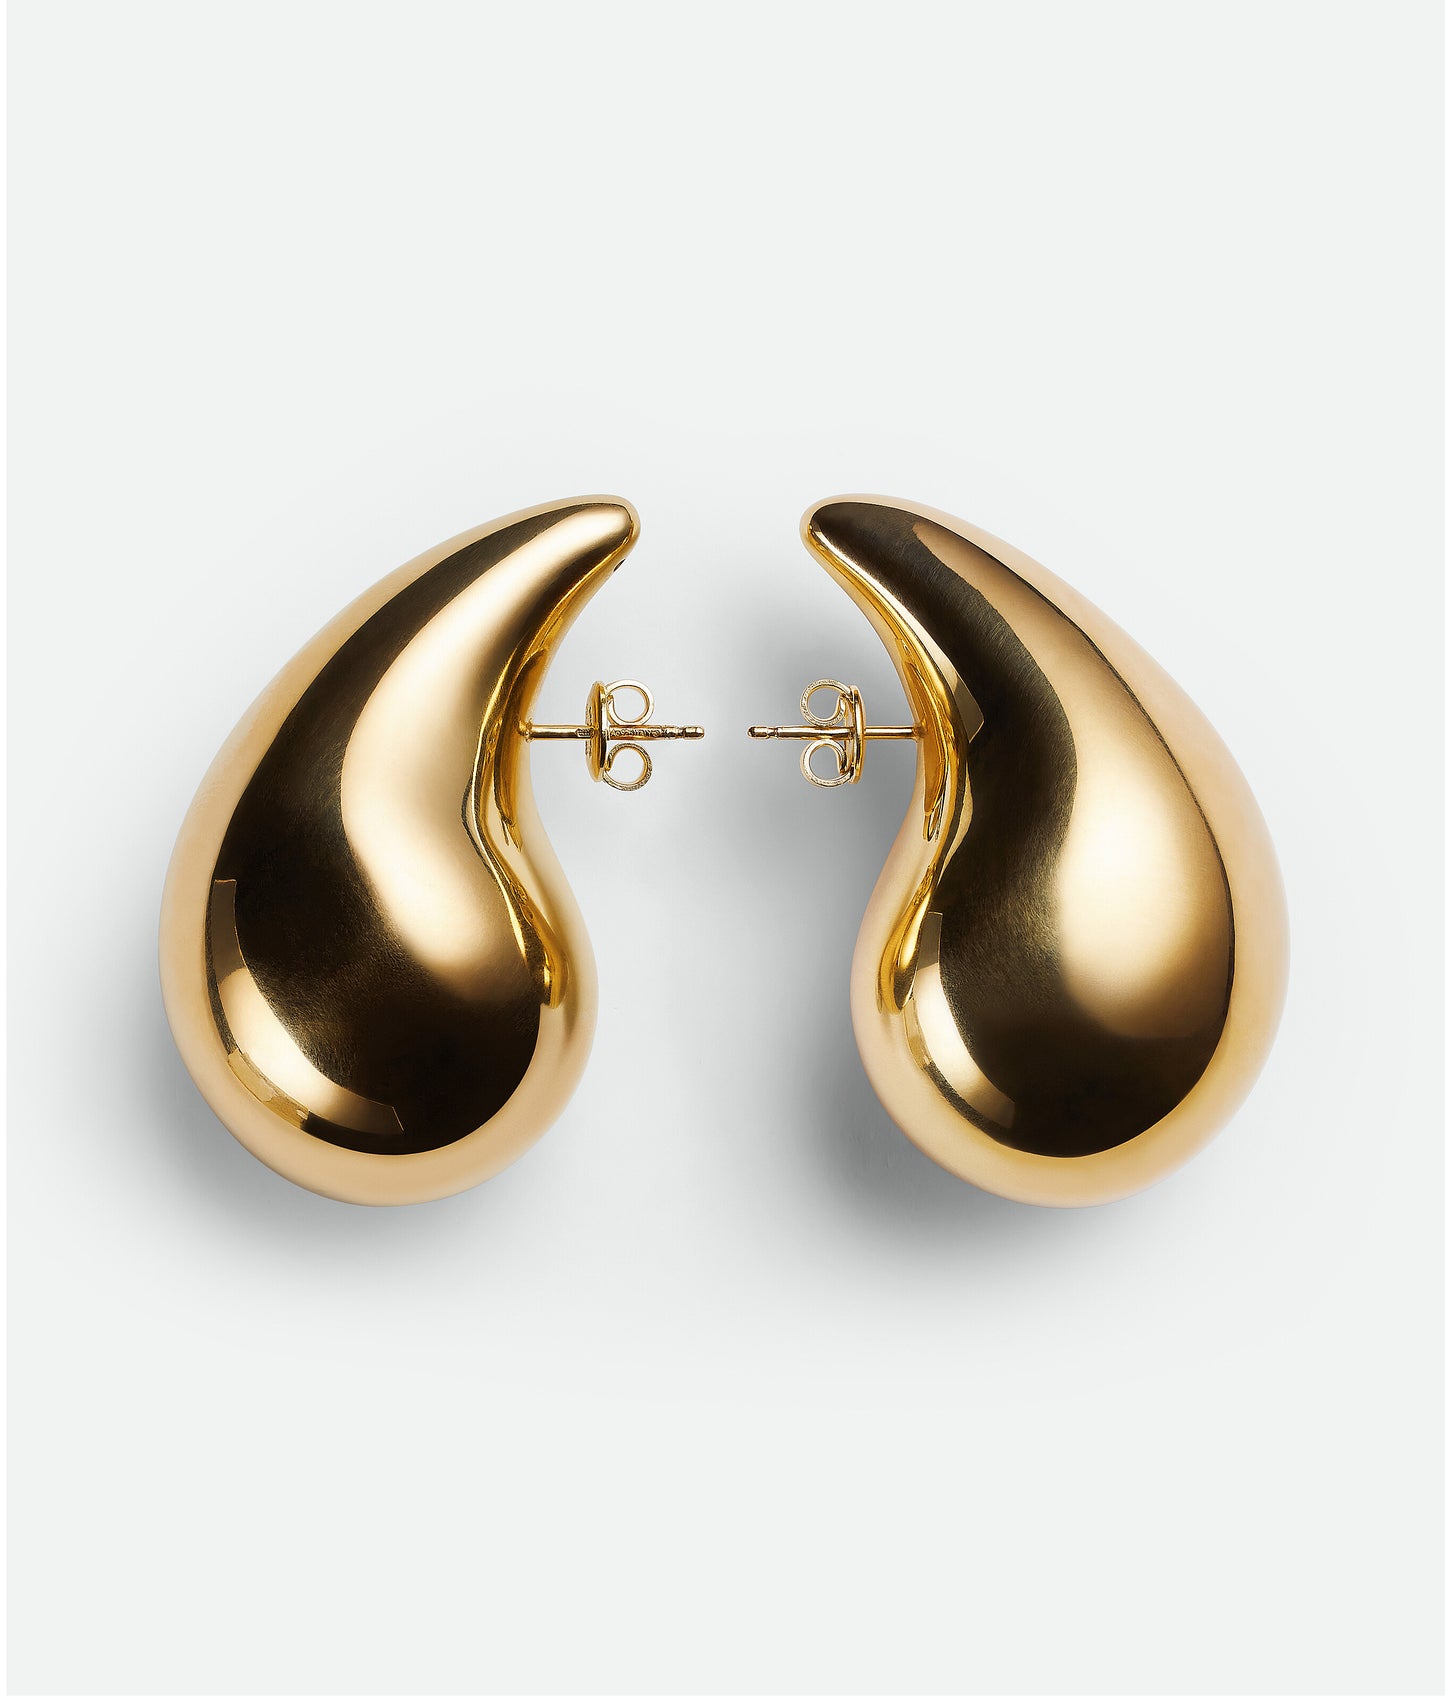 Gold tear drop earrings